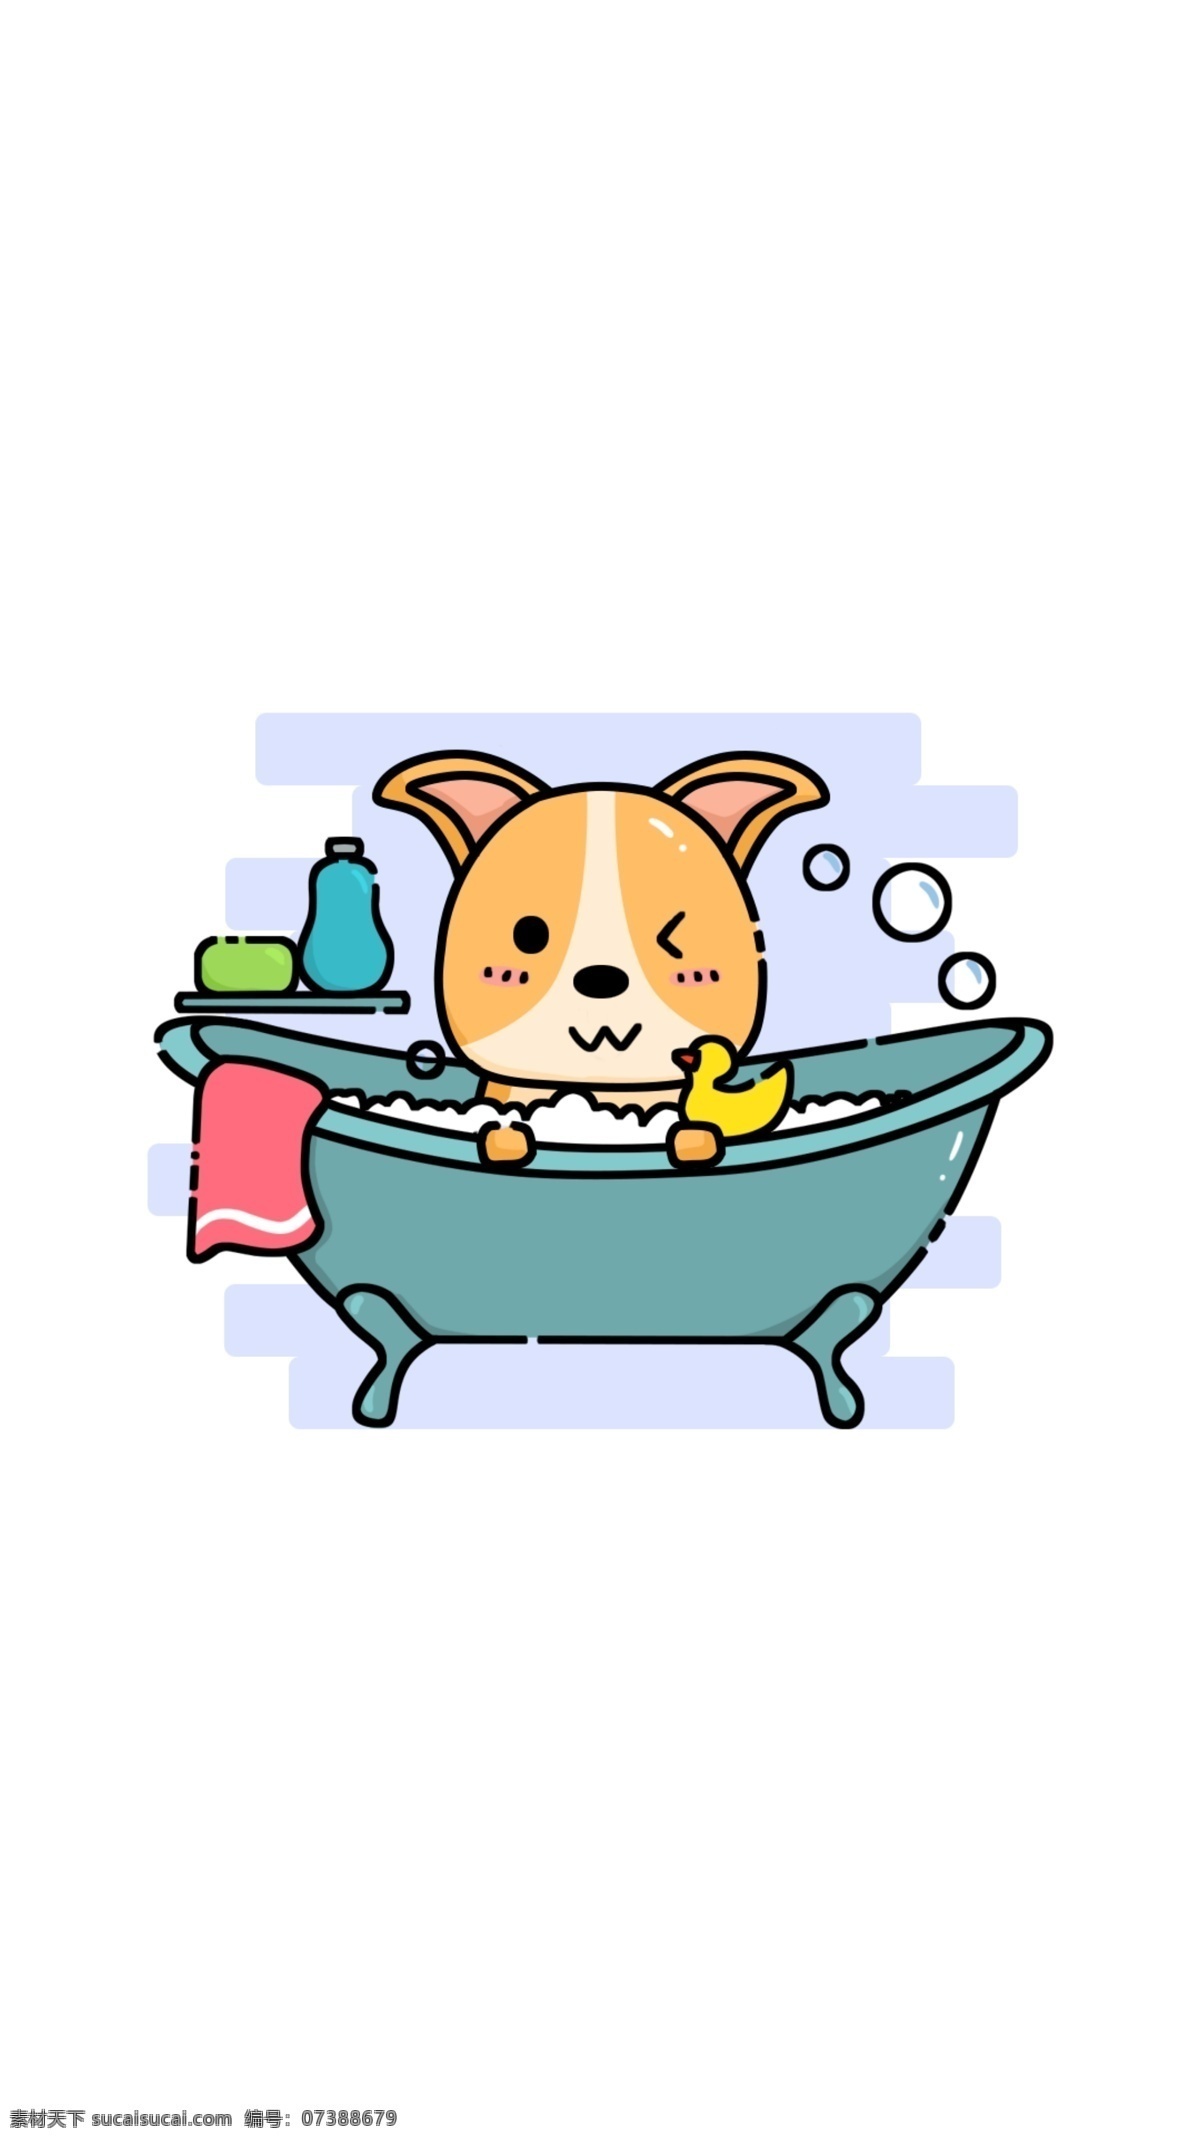 爱 洗澡 短腿 柯基 卡通 宠物 插画 图标 手机壁纸 文章配图 装饰图案 动物插画